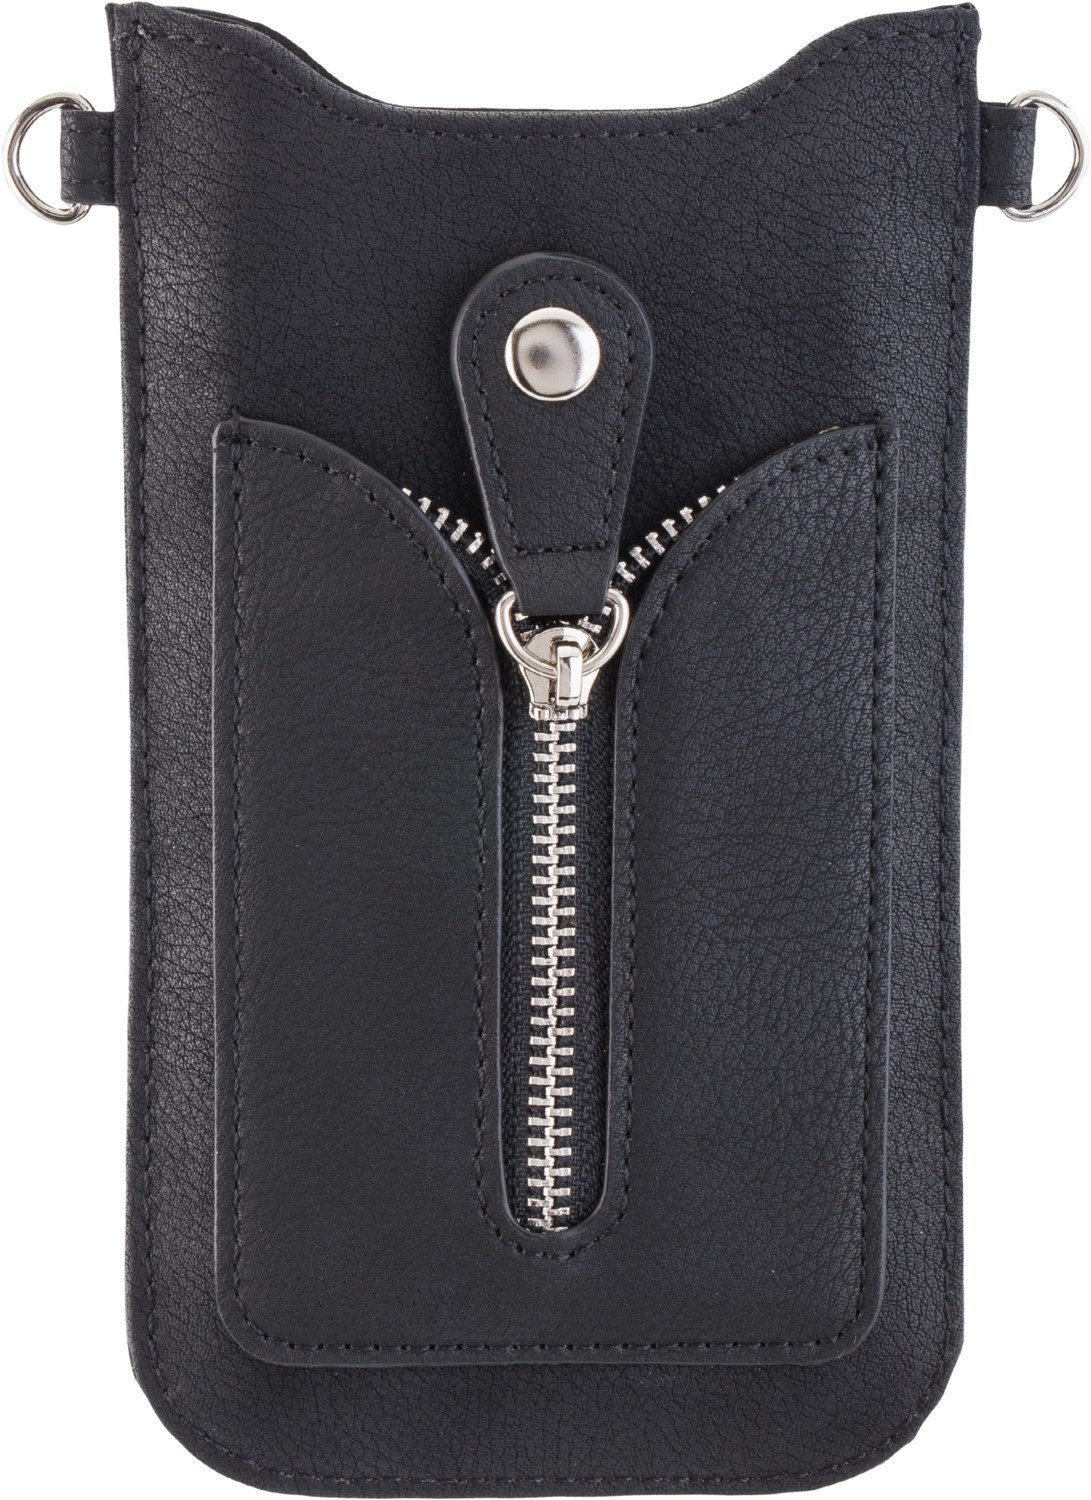 Necklace Case Universal 5.2 mit Strap Black schwarz